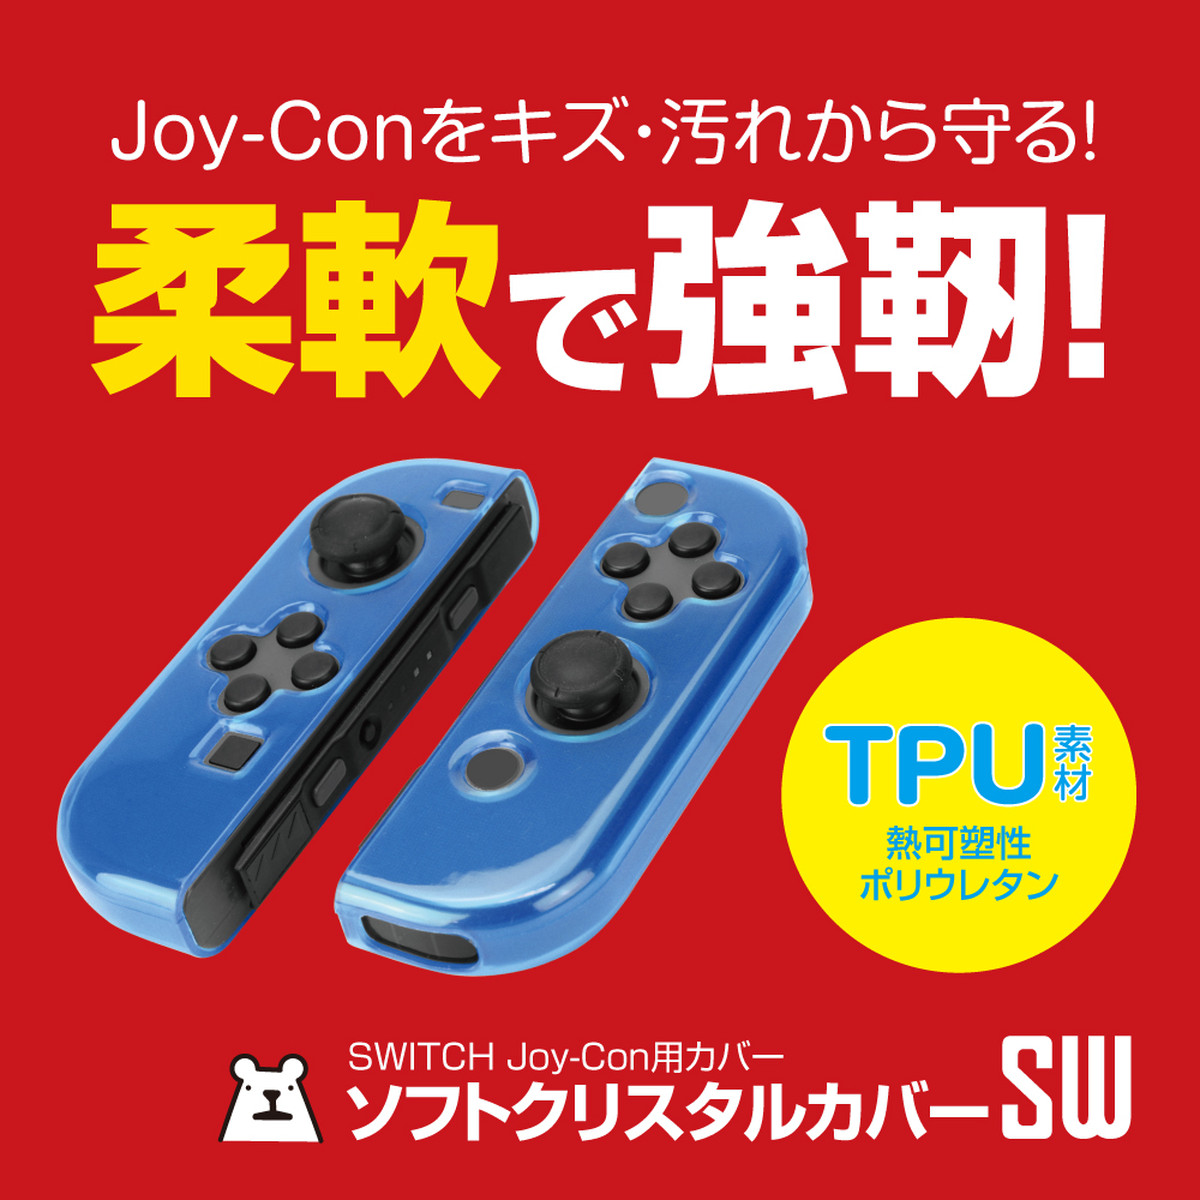 Switch用 Joy Con ジョイコン カバー ソフトクリスタルカバーsw メール便送料無料 ゲームテック公式ストア ゲームテックダイレクト